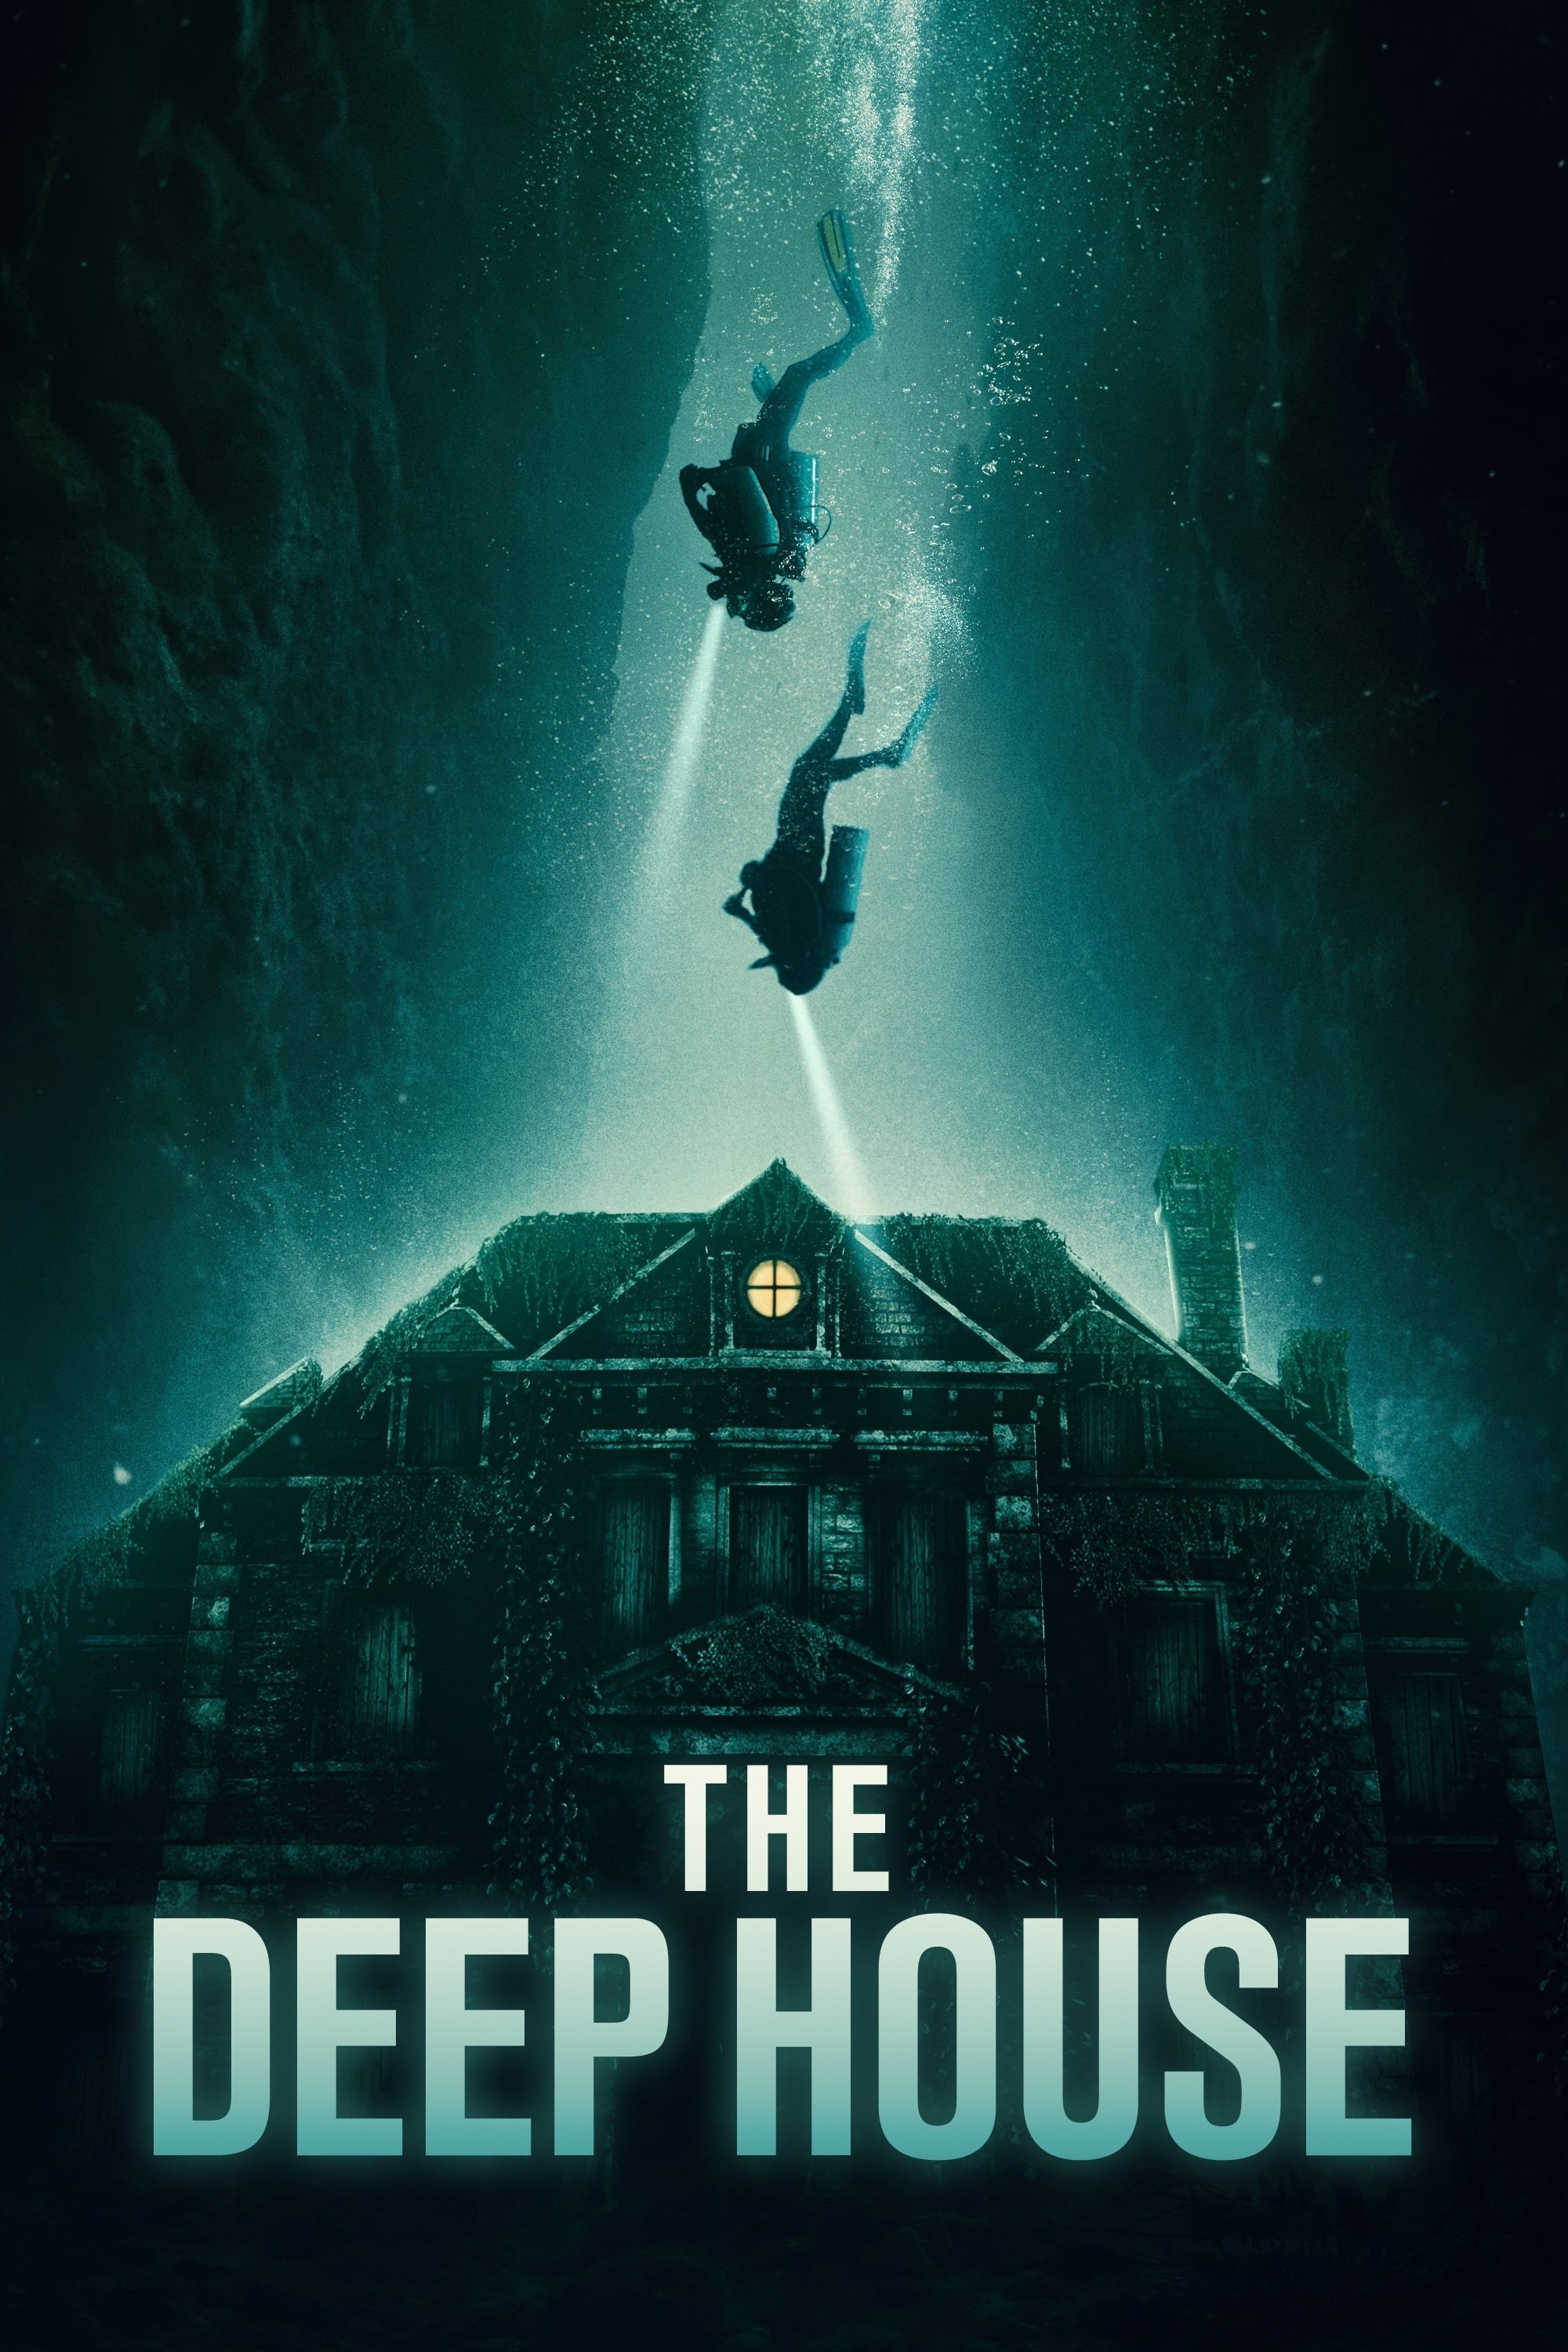 La casa de las profundidades (2021)